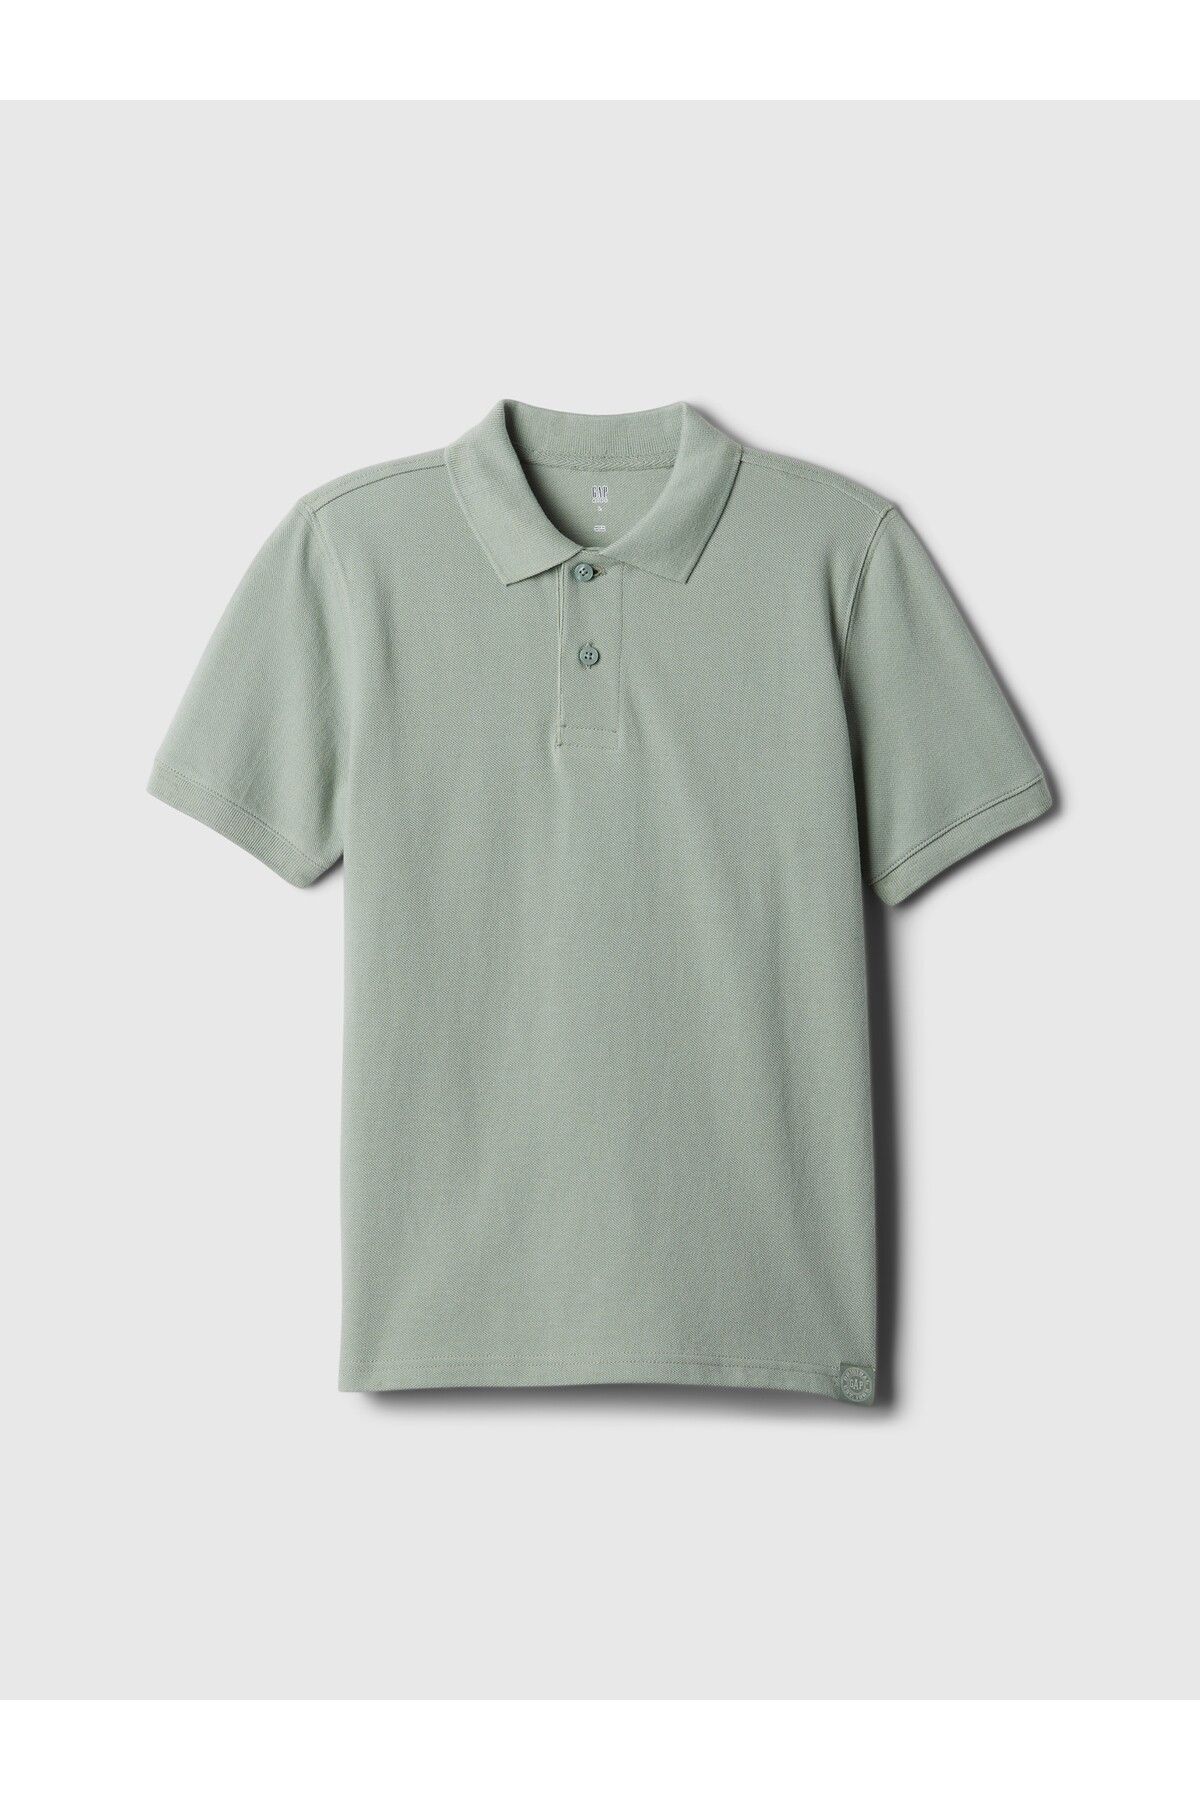 GAP Erkek Çocuk Yeşil Pique Polo Yaka T-Shirt